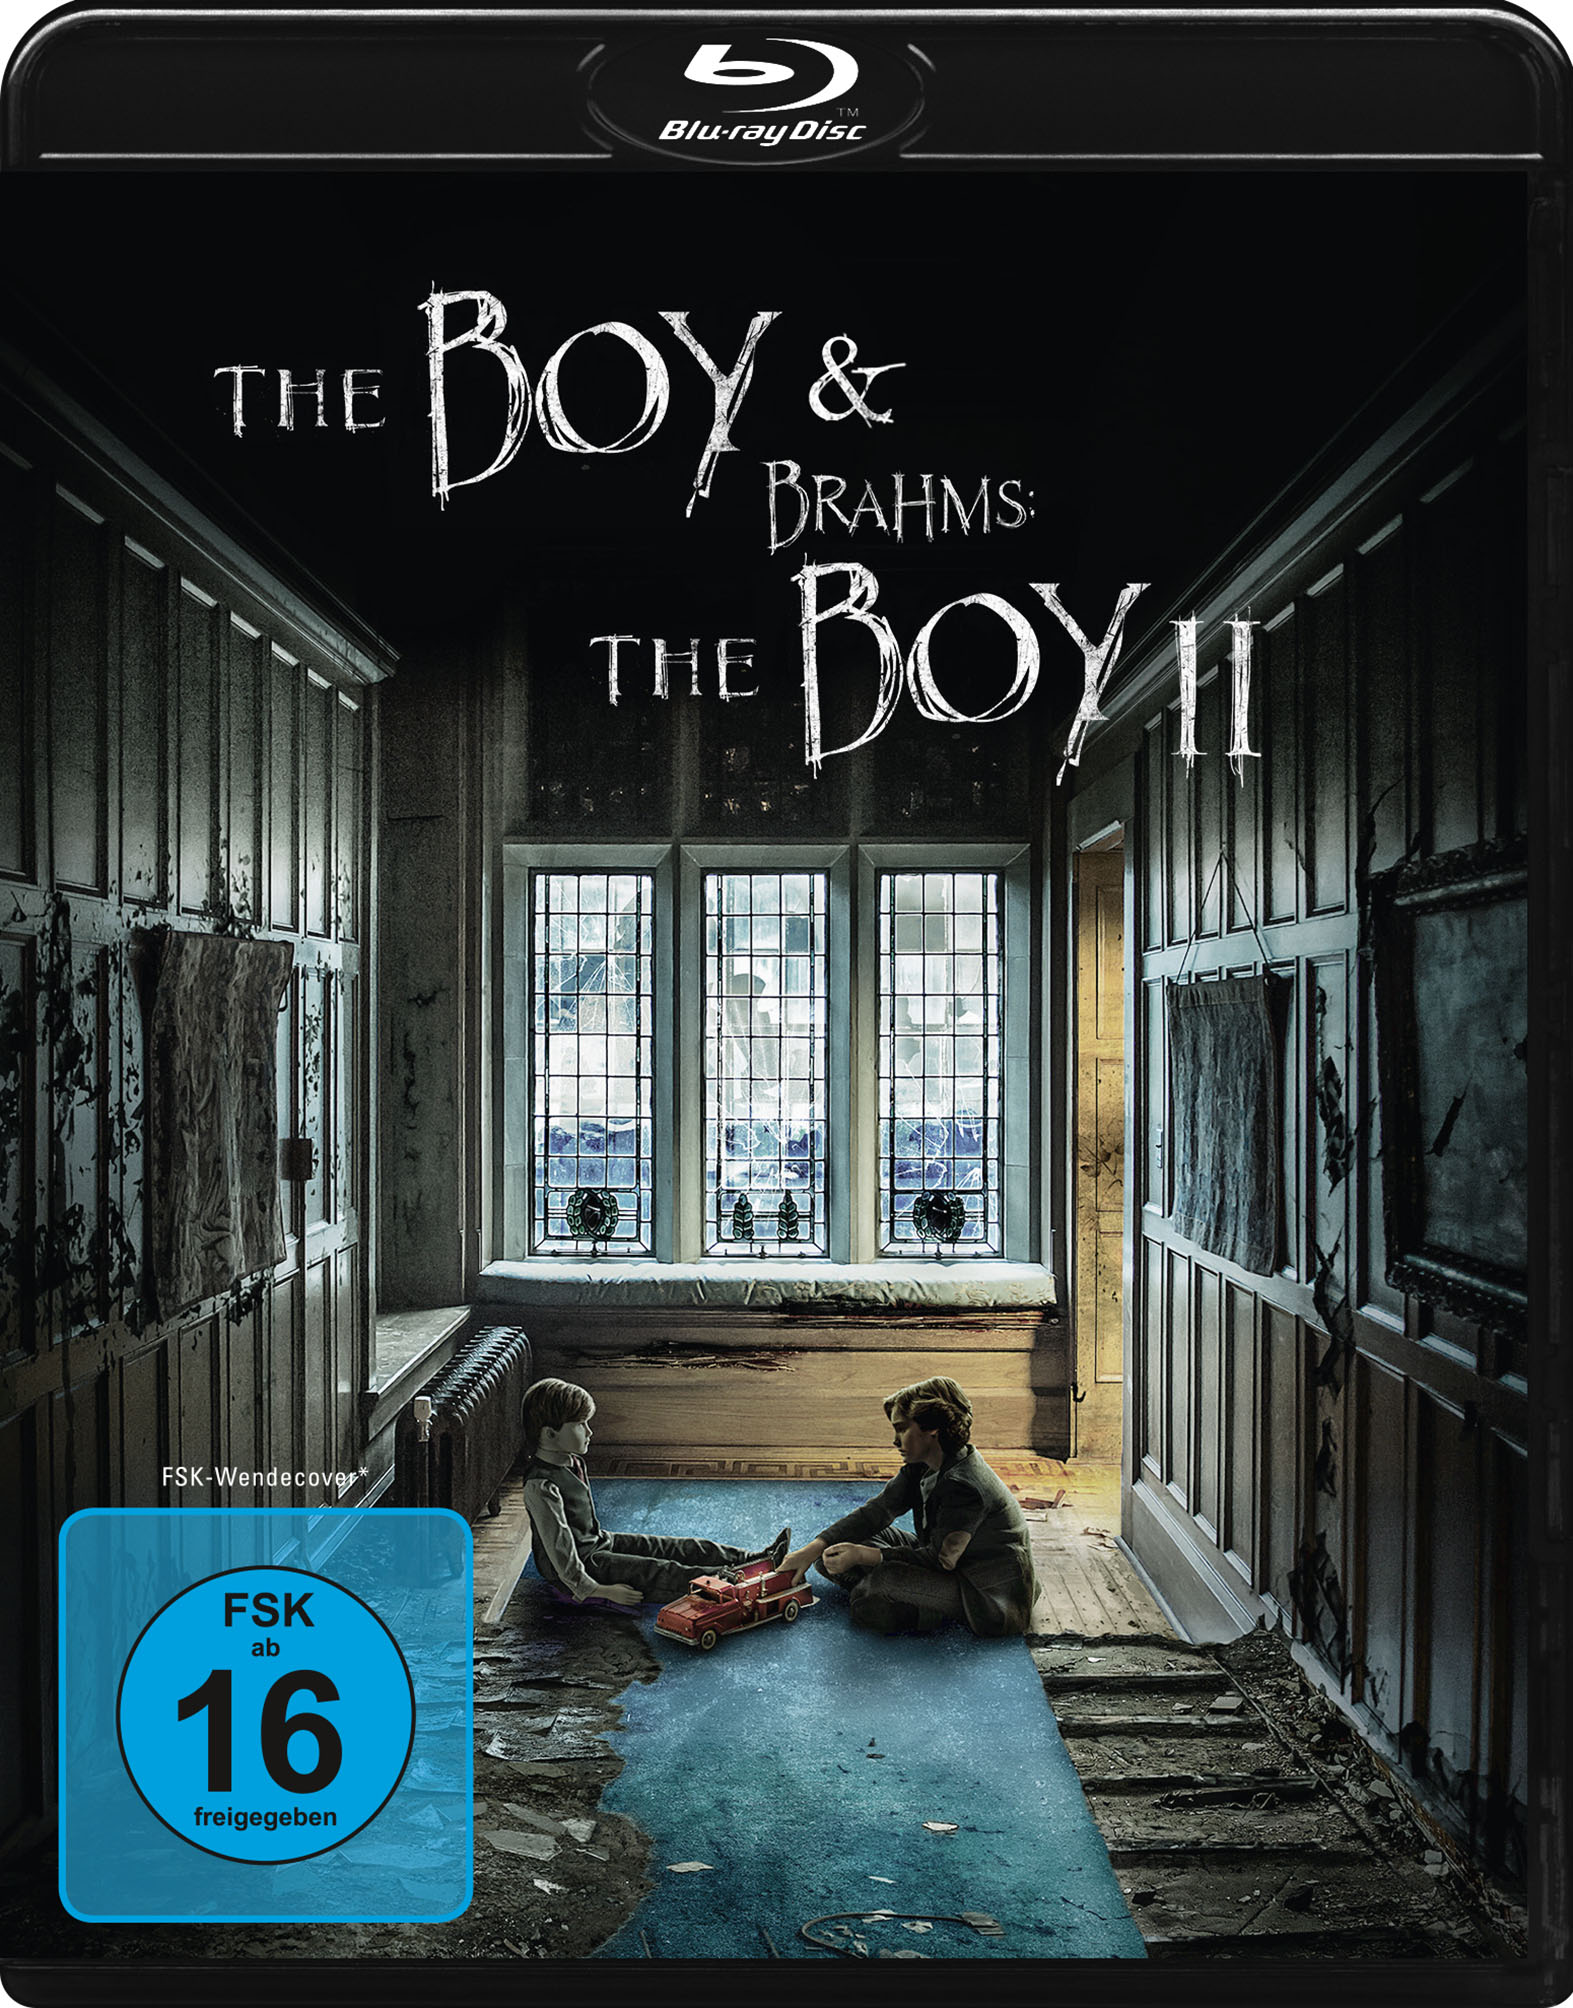 The Boy I + II (Blu-ray)